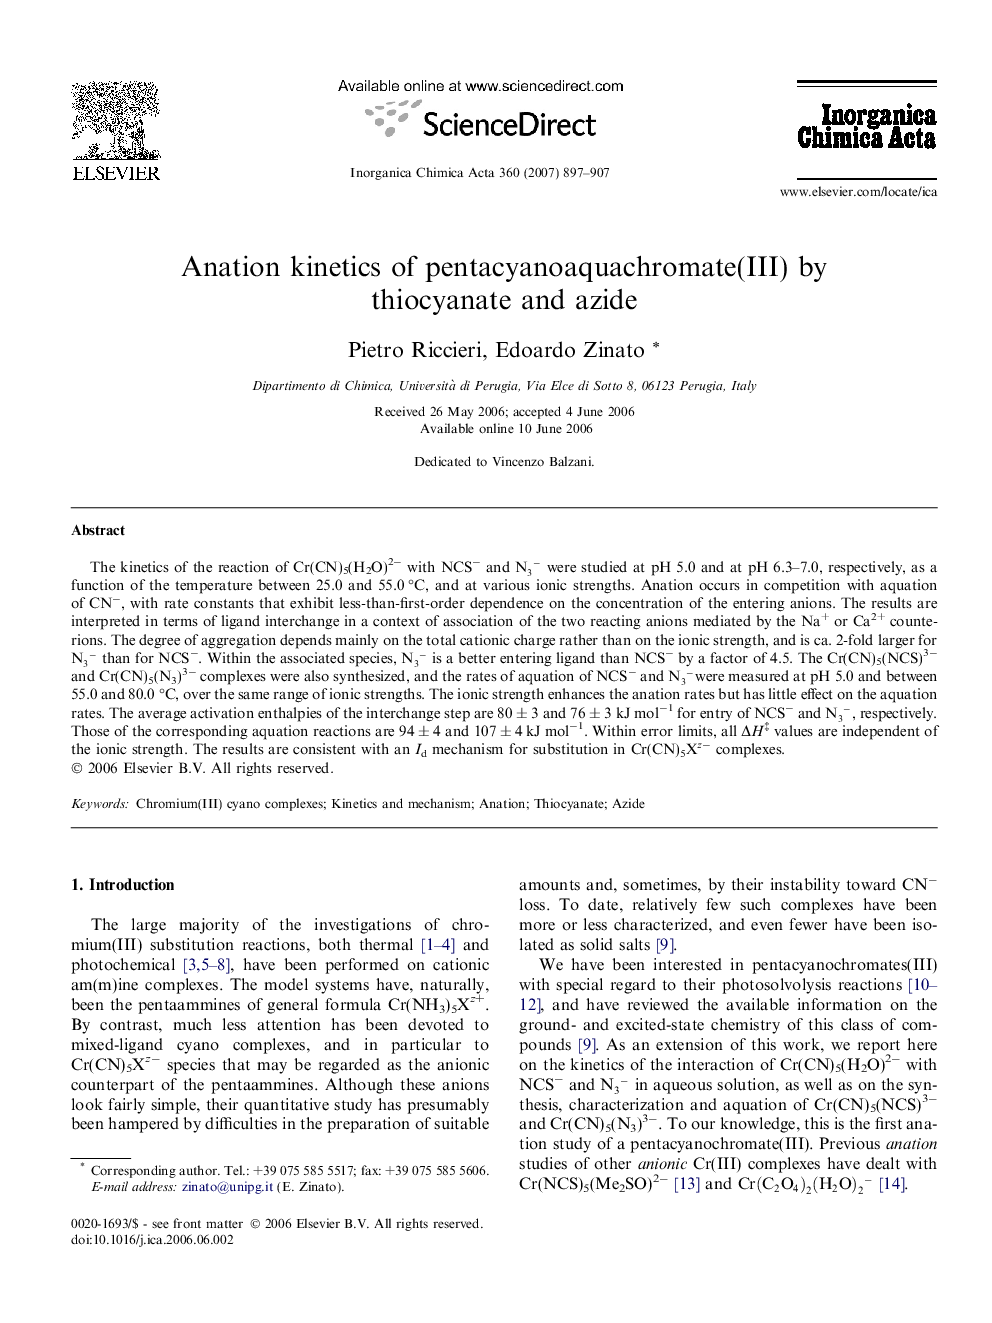 Anation kinetics of pentacyanoaquachromate(III) by thiocyanate and azide